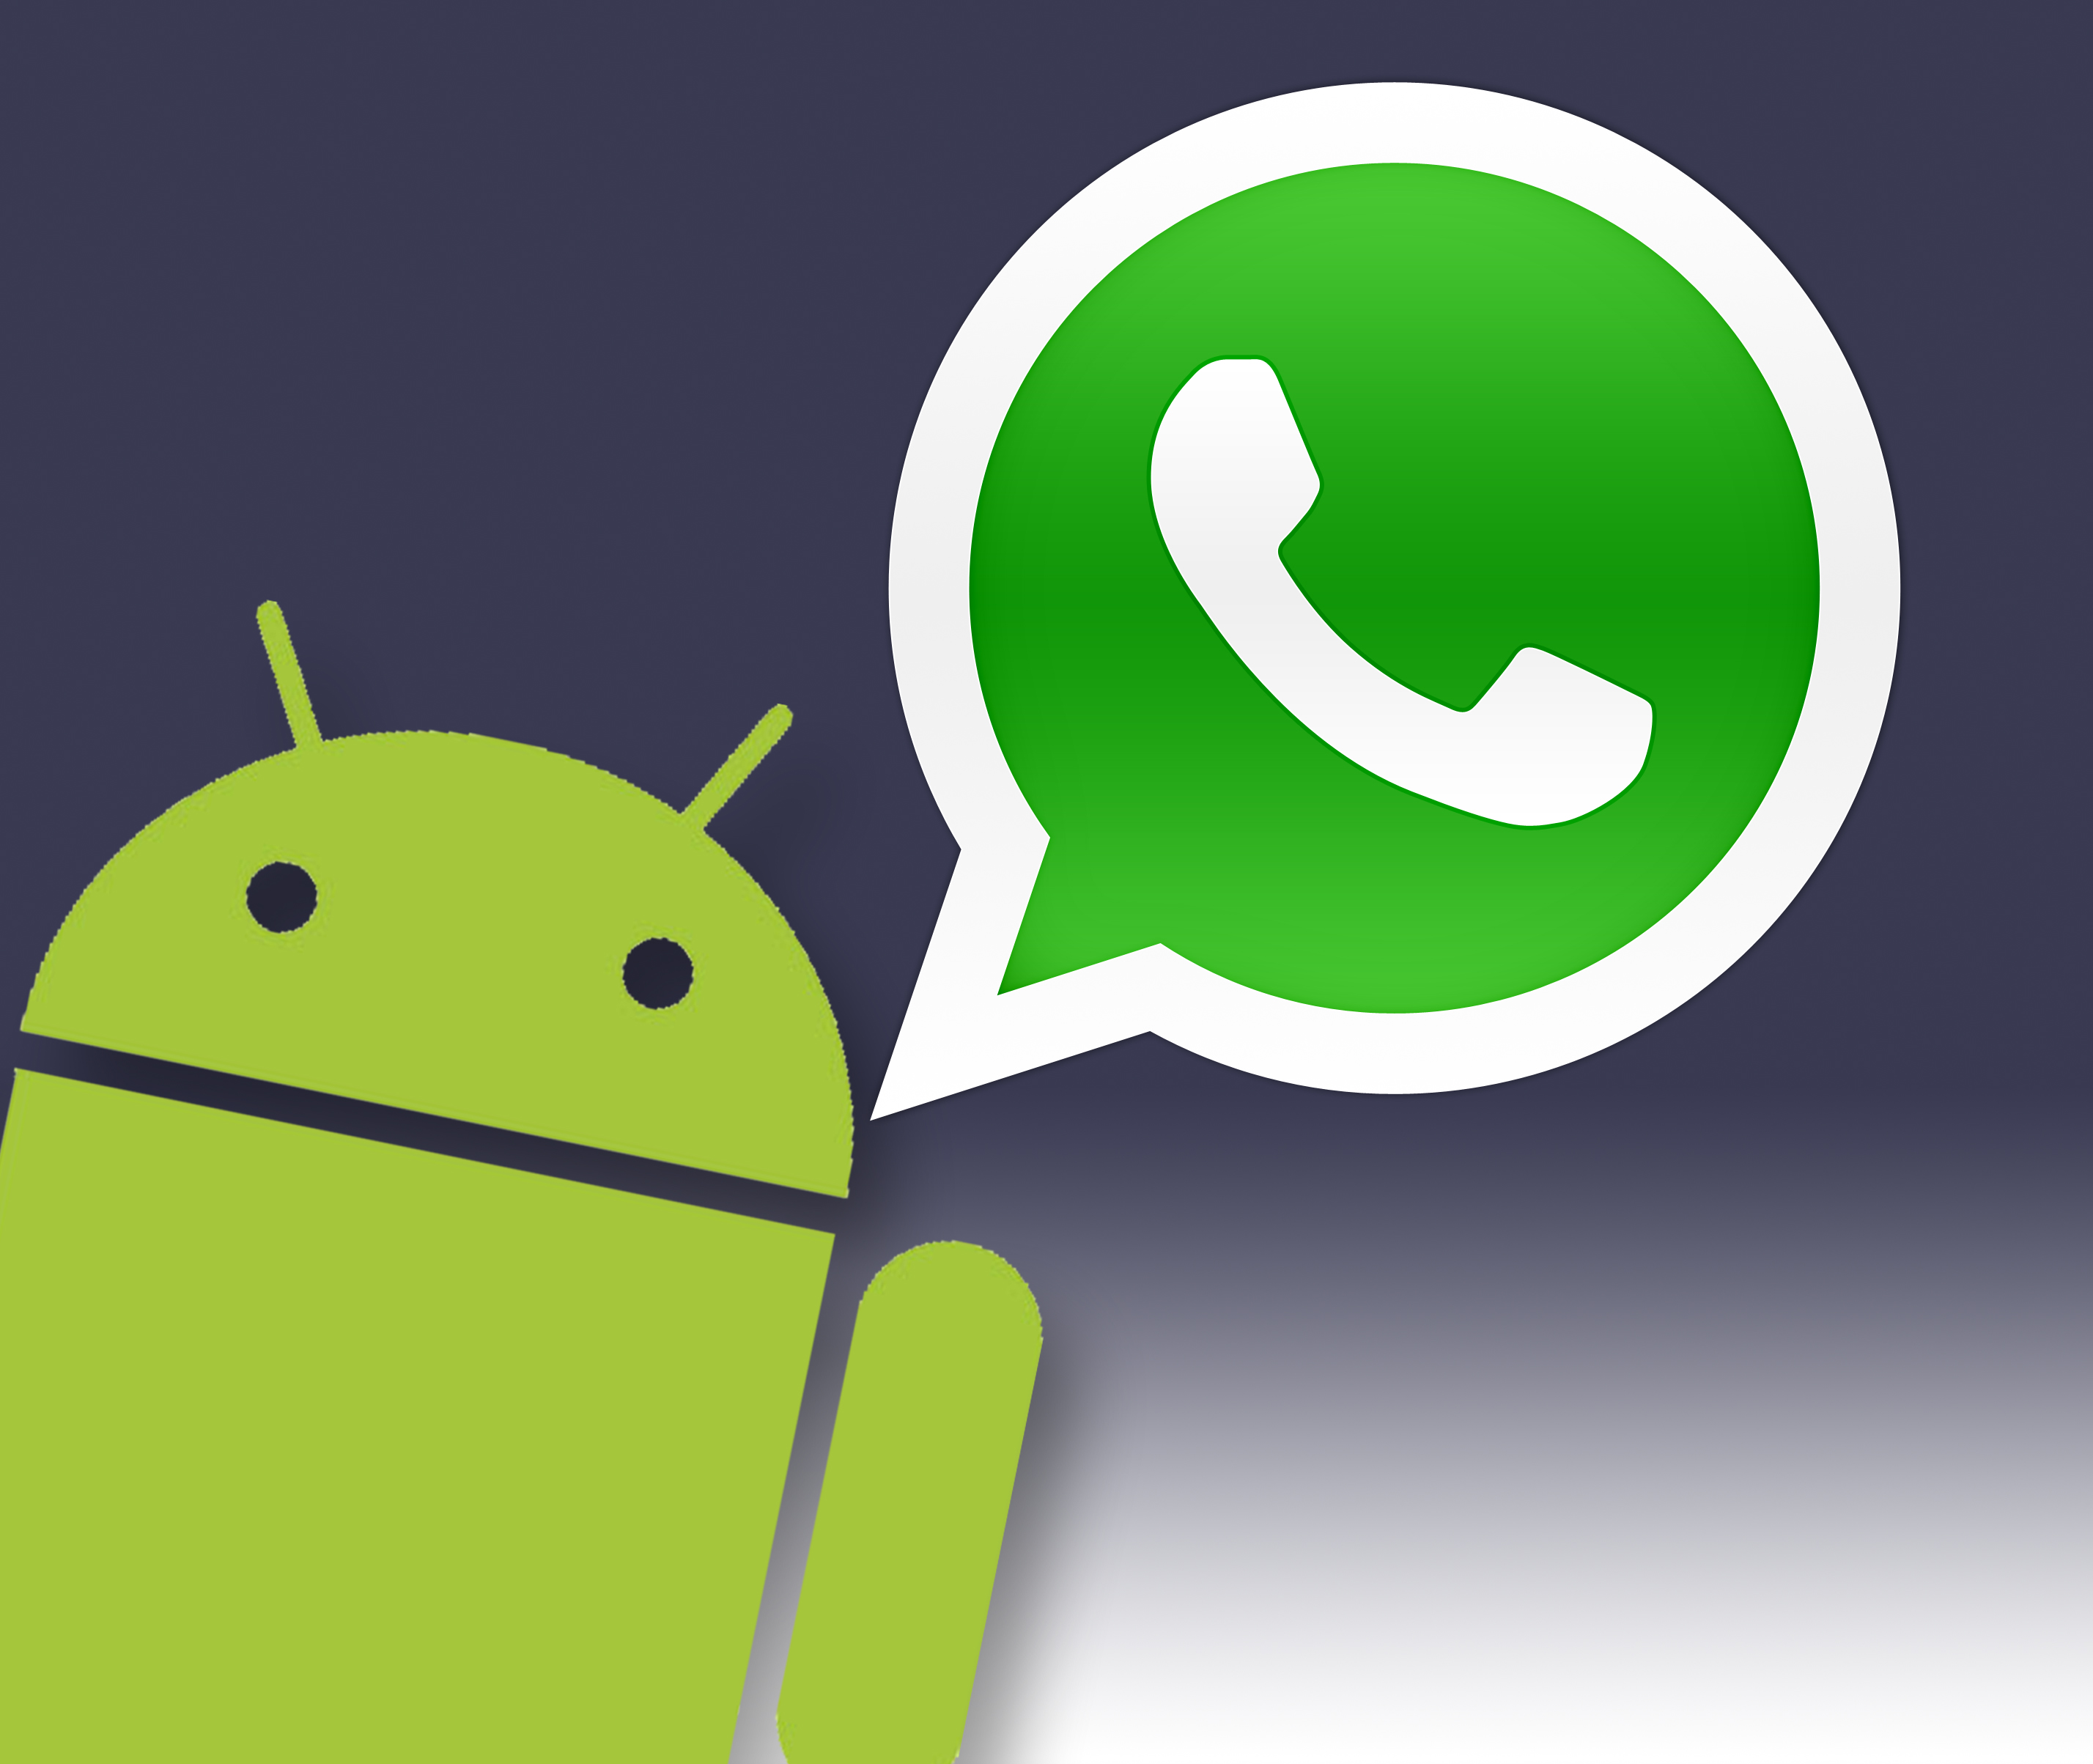 Nuevo error de seguridad en WhatsApp para Android - Panda Security Mediacenter